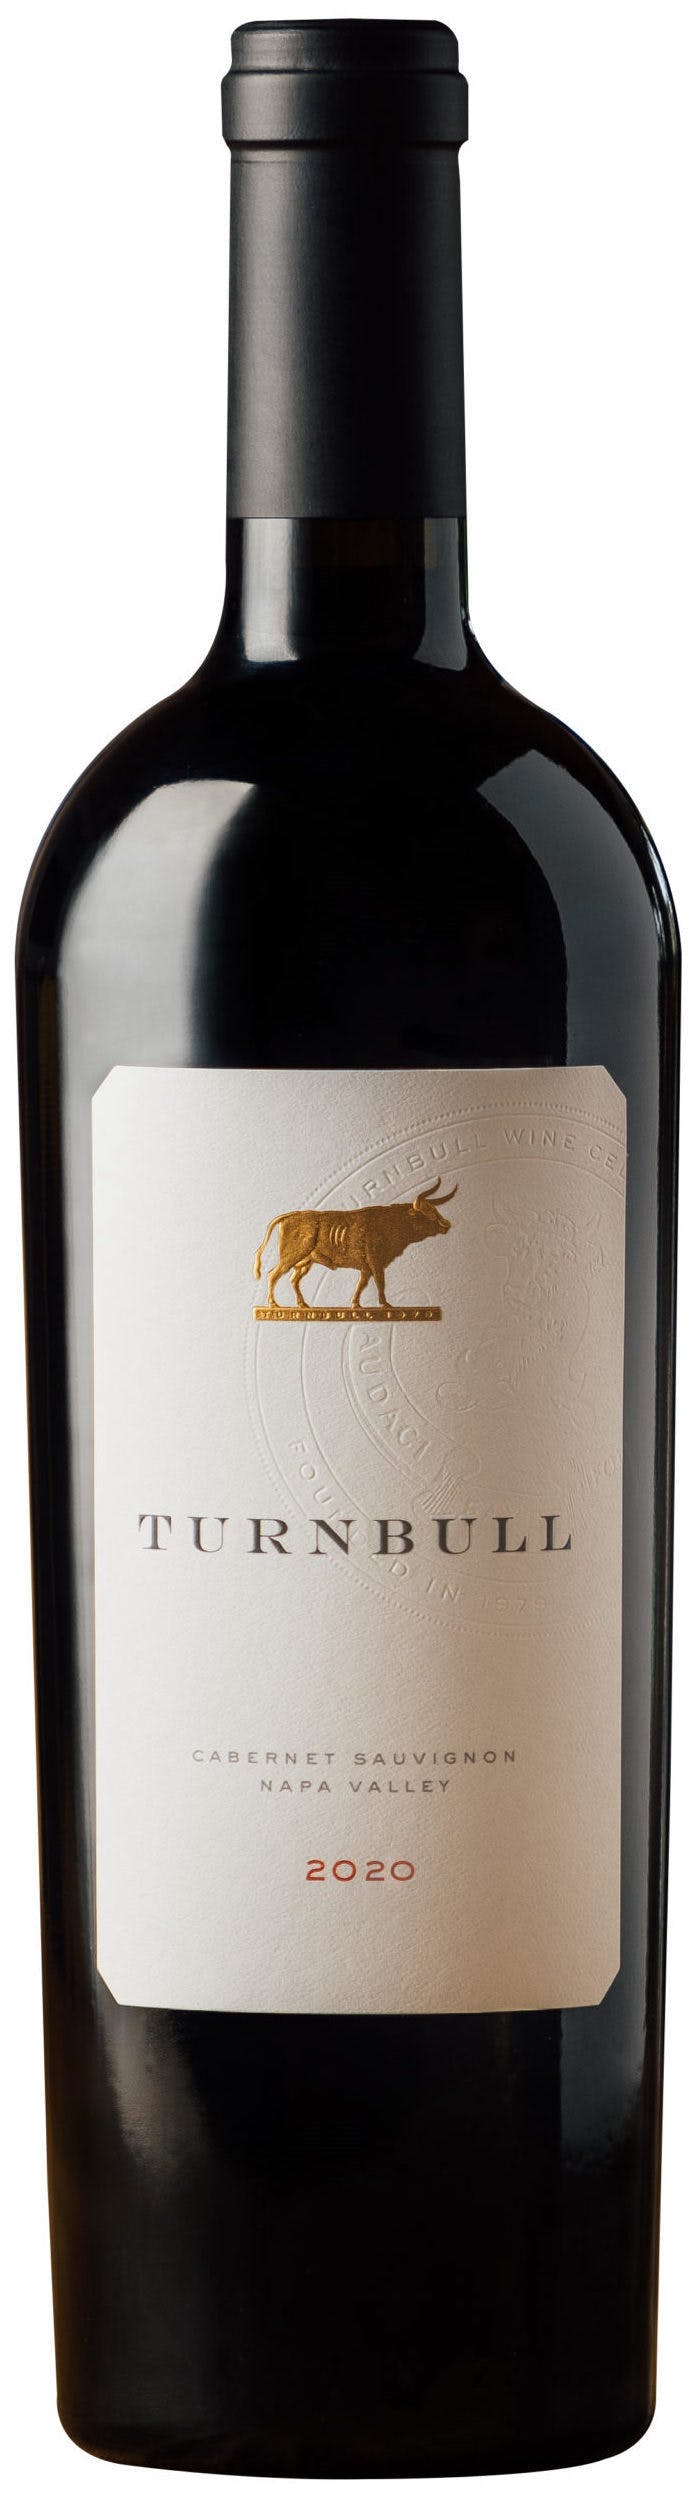 Turnbull Cabernet Sauvignon 2020 750ml - Argonaut Wine & Liquor